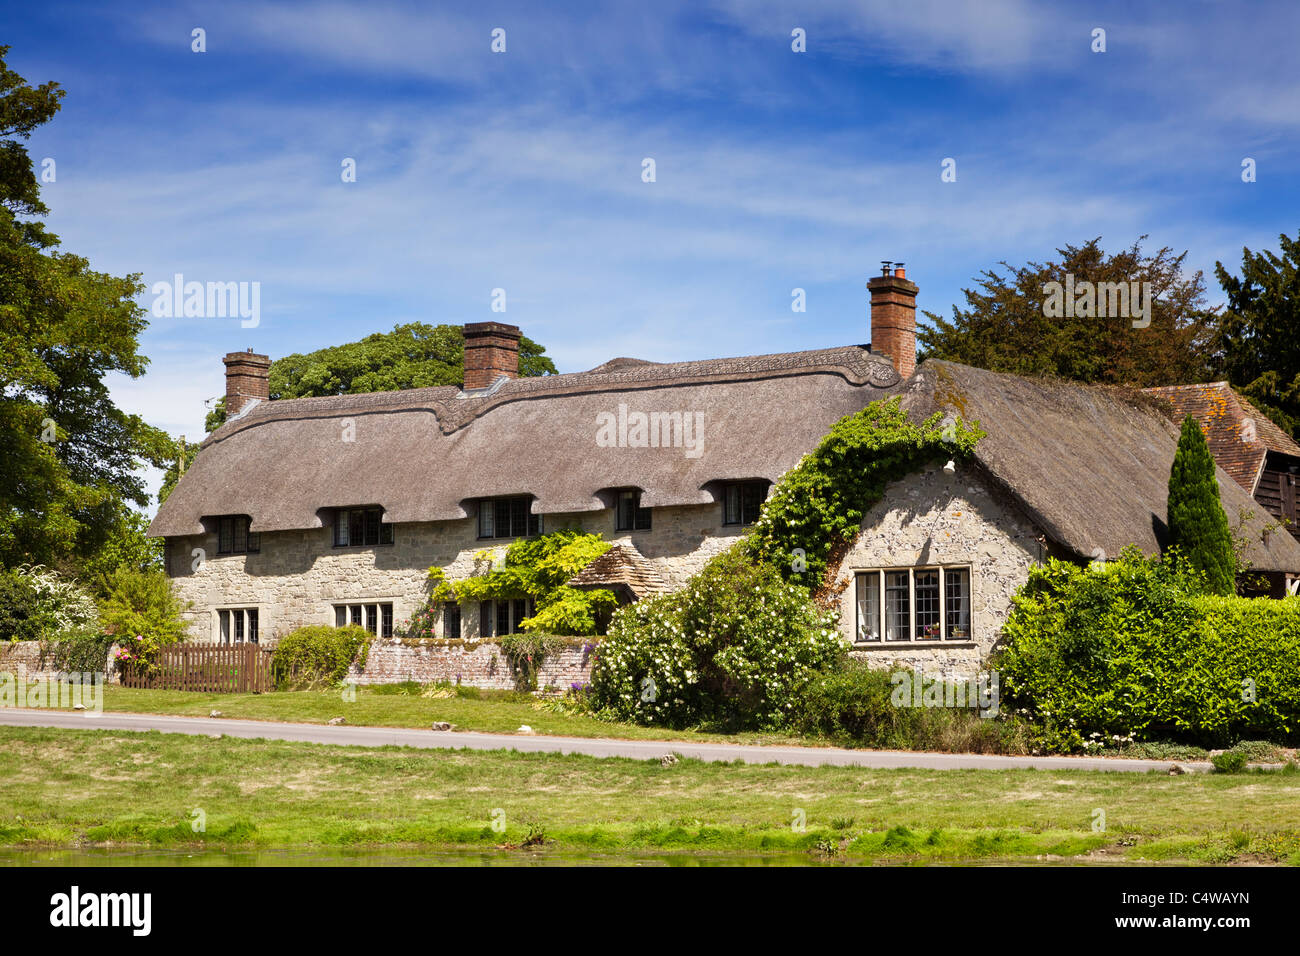 Belle vieille maison individuelle chalet chaume dans le village de Ashmore, Dorset, England, UK en été Banque D'Images